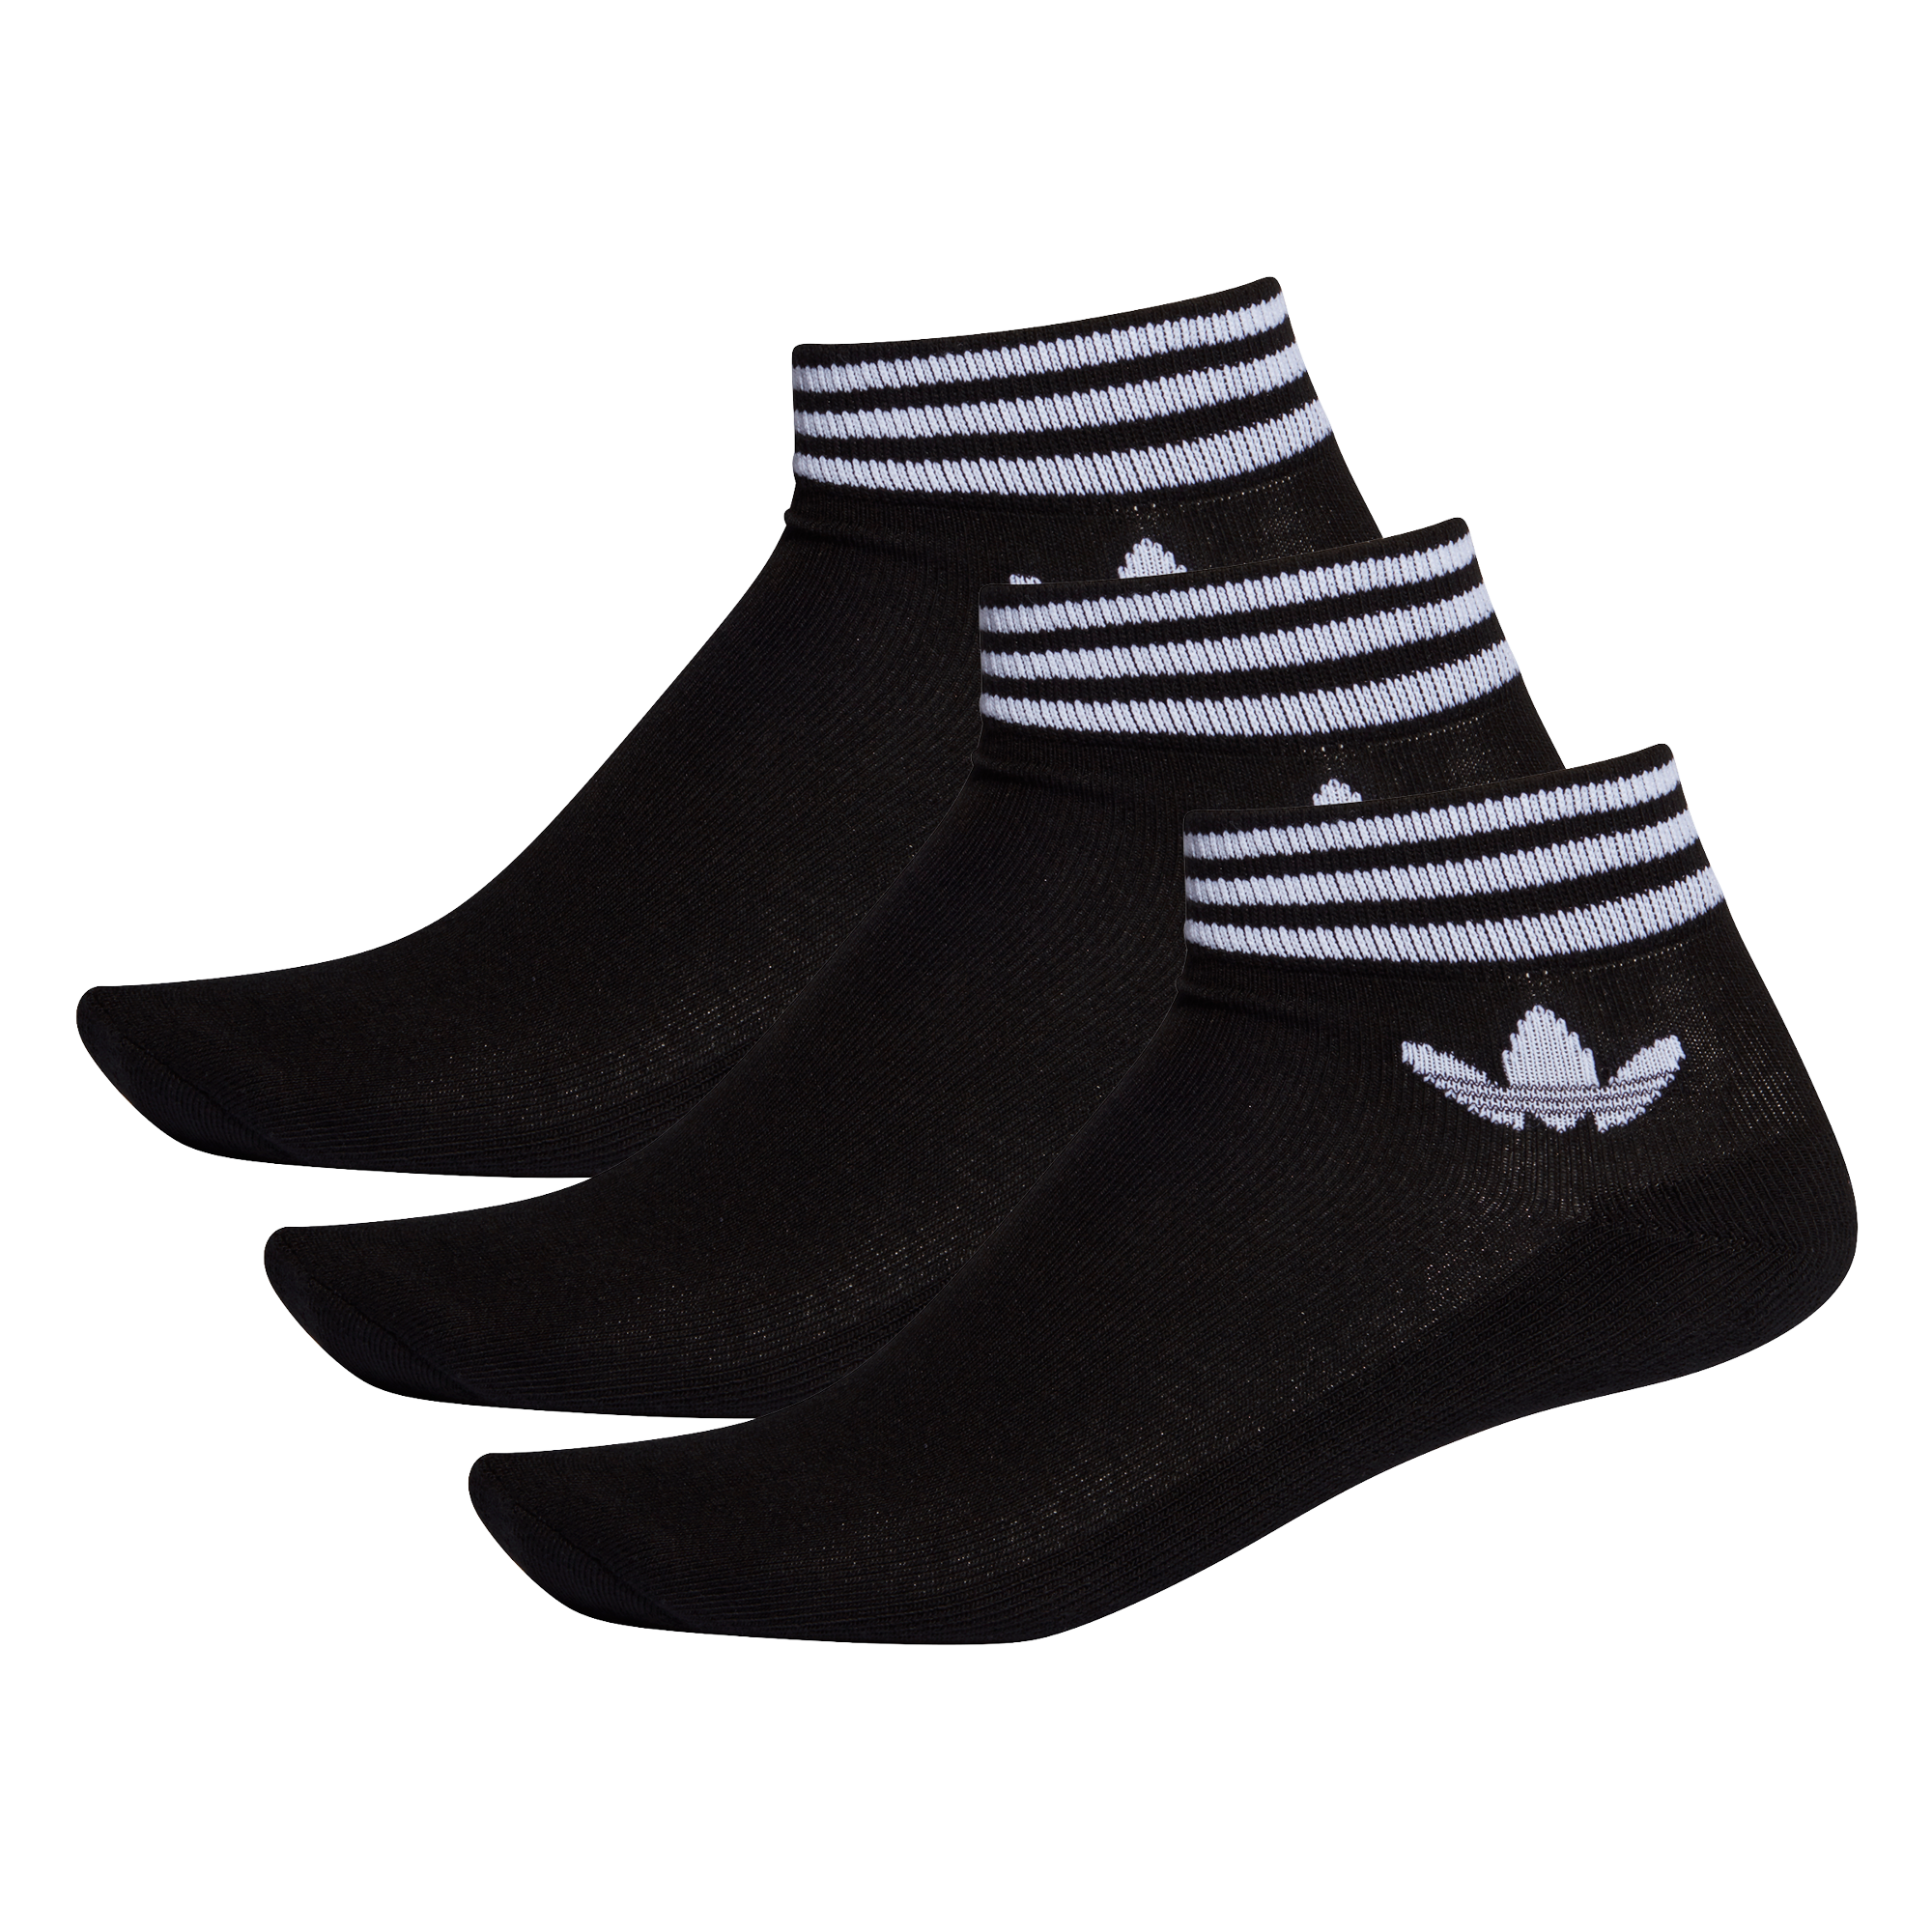 Adidas Socquettes Trefoil (Lot de 3 paires), Chaussettes, Adidas